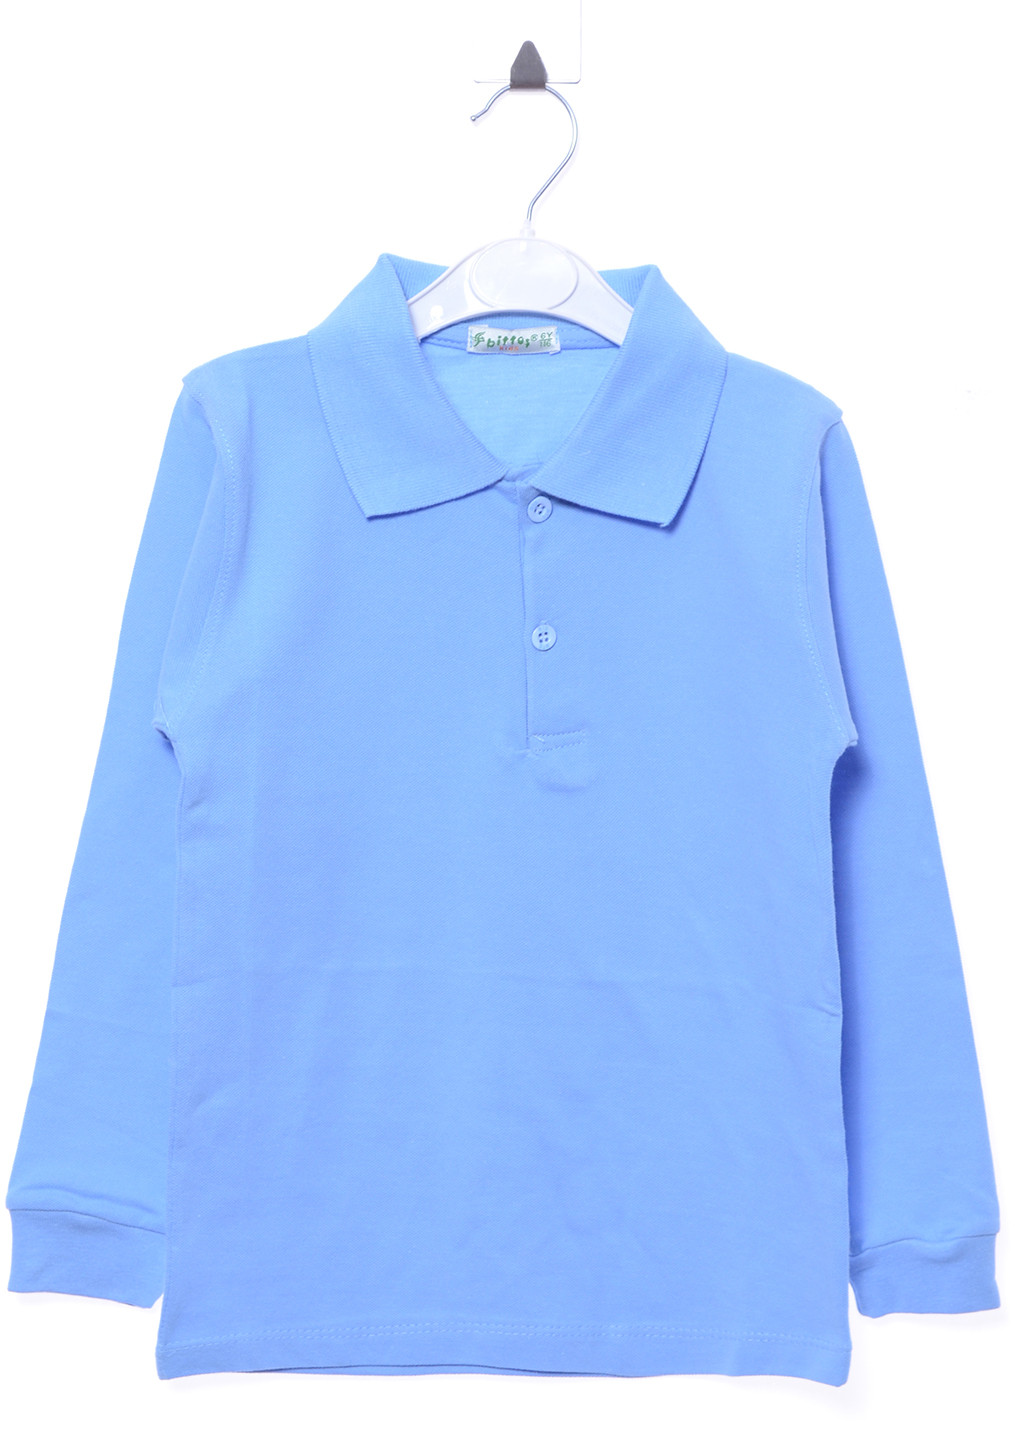 Голубой детская футболка-поло для мальчика Bittos однотонная